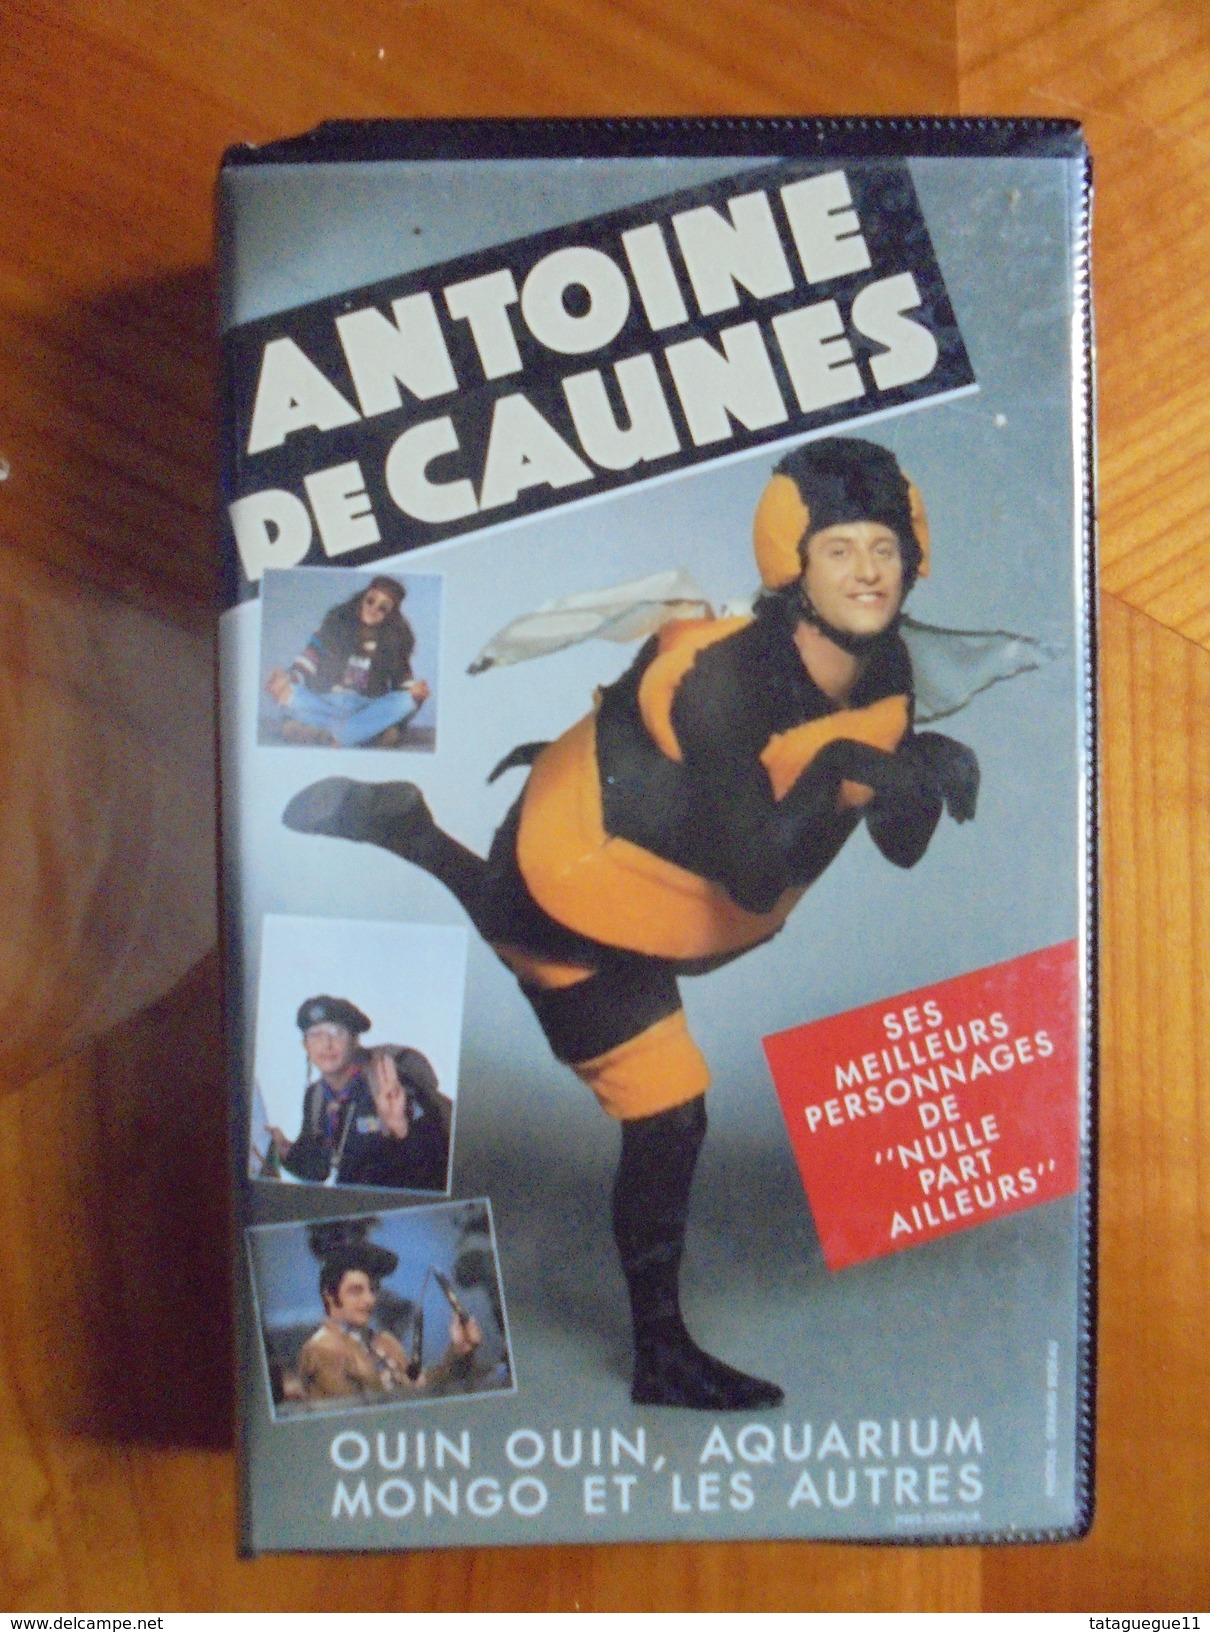 Ancien - Cassette Vidéo ANTOINE DE CAUNES "Nulle Part Ailleurs" 1992 - Tv Shows & Series